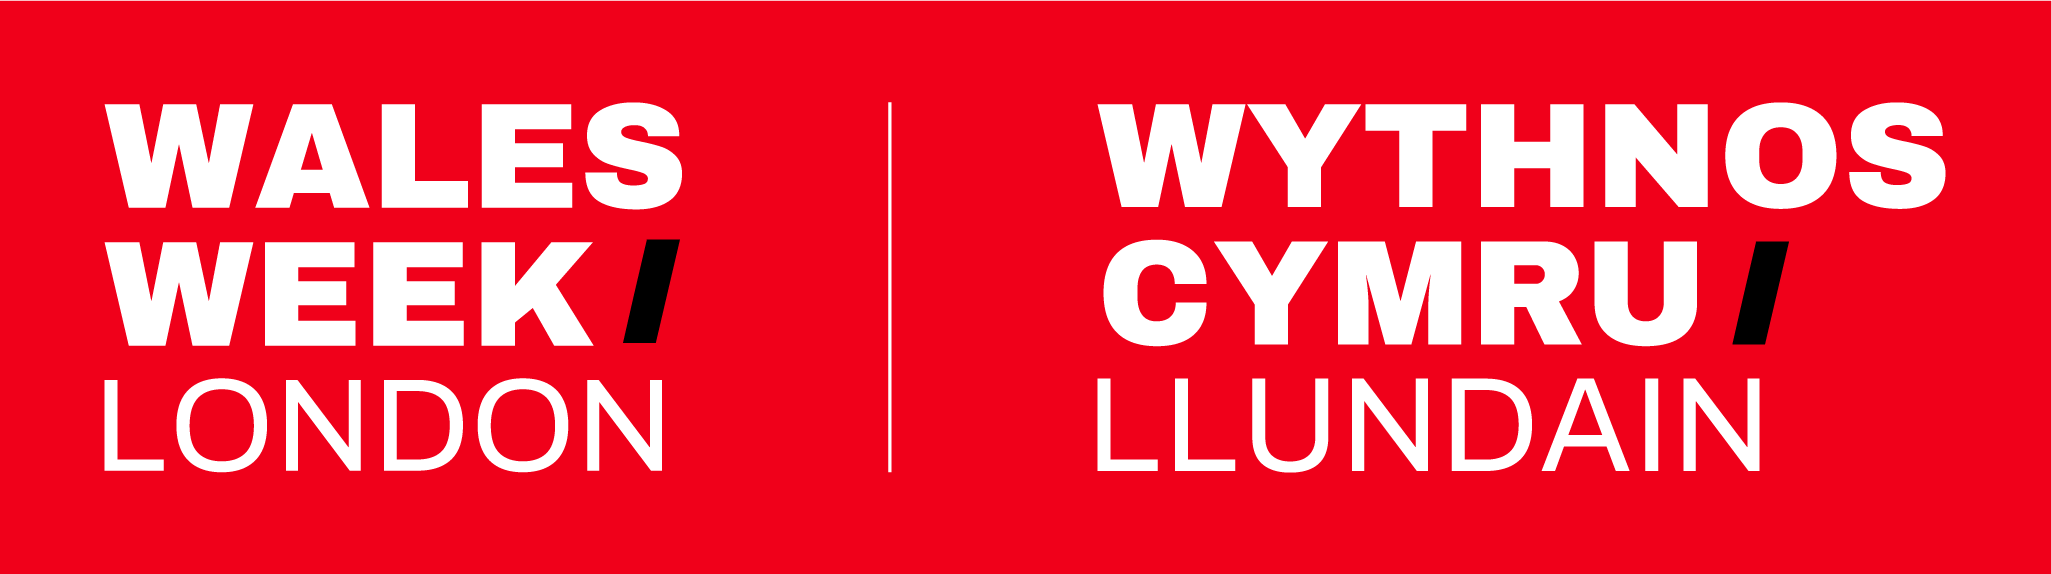 Wales Week London Logo